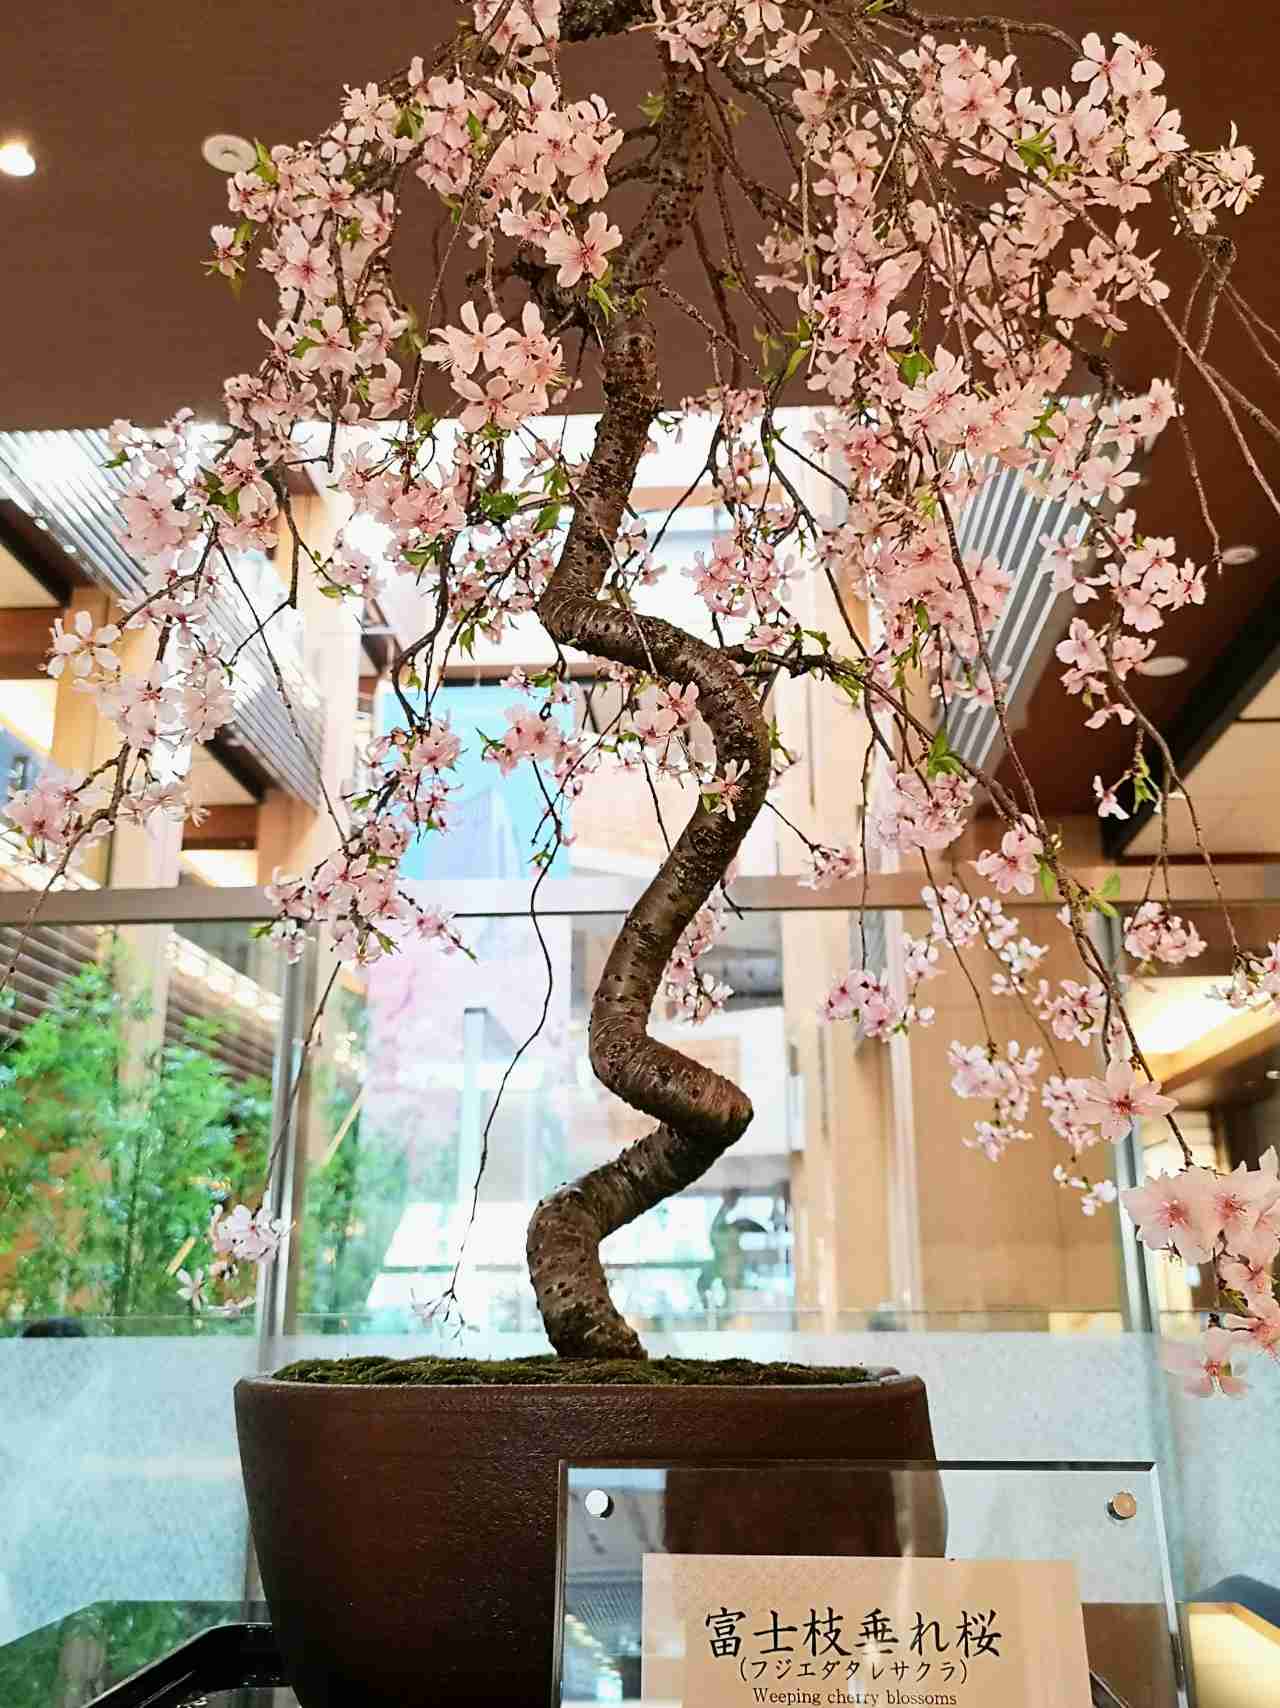 ガレリア館内の桜のオブジェ